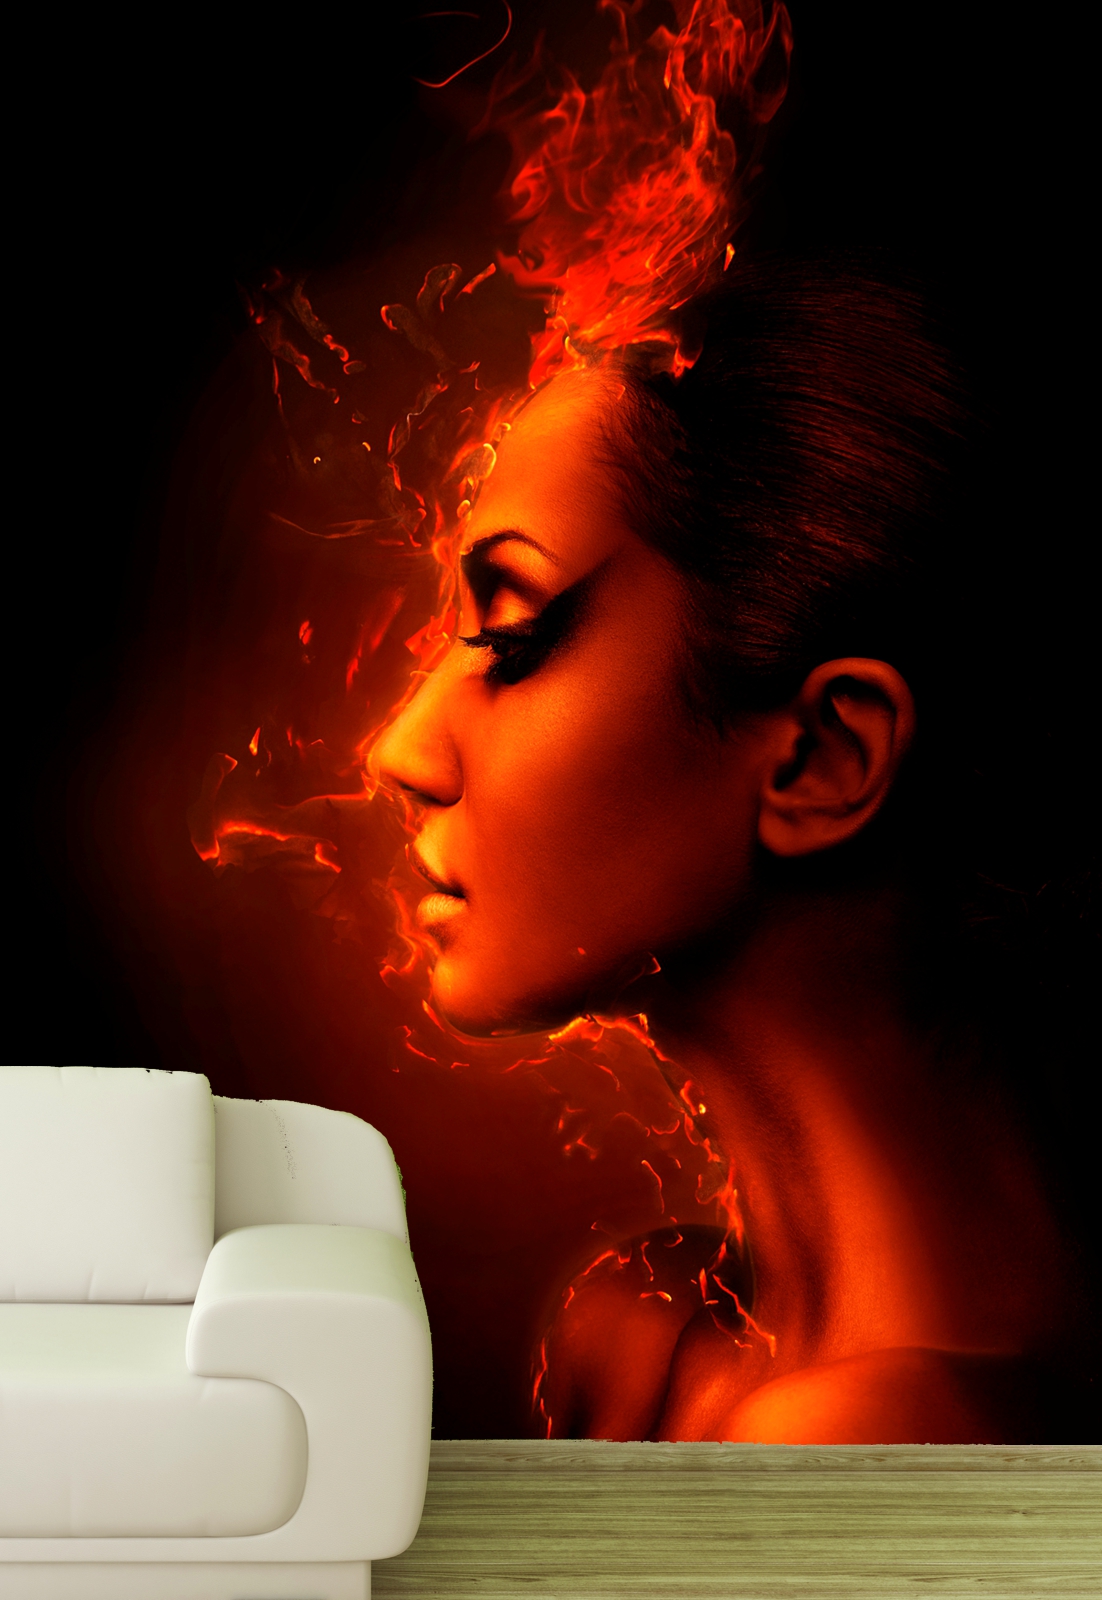 Vlies XXL Poster Fototapete Tapete Frau in Flammen